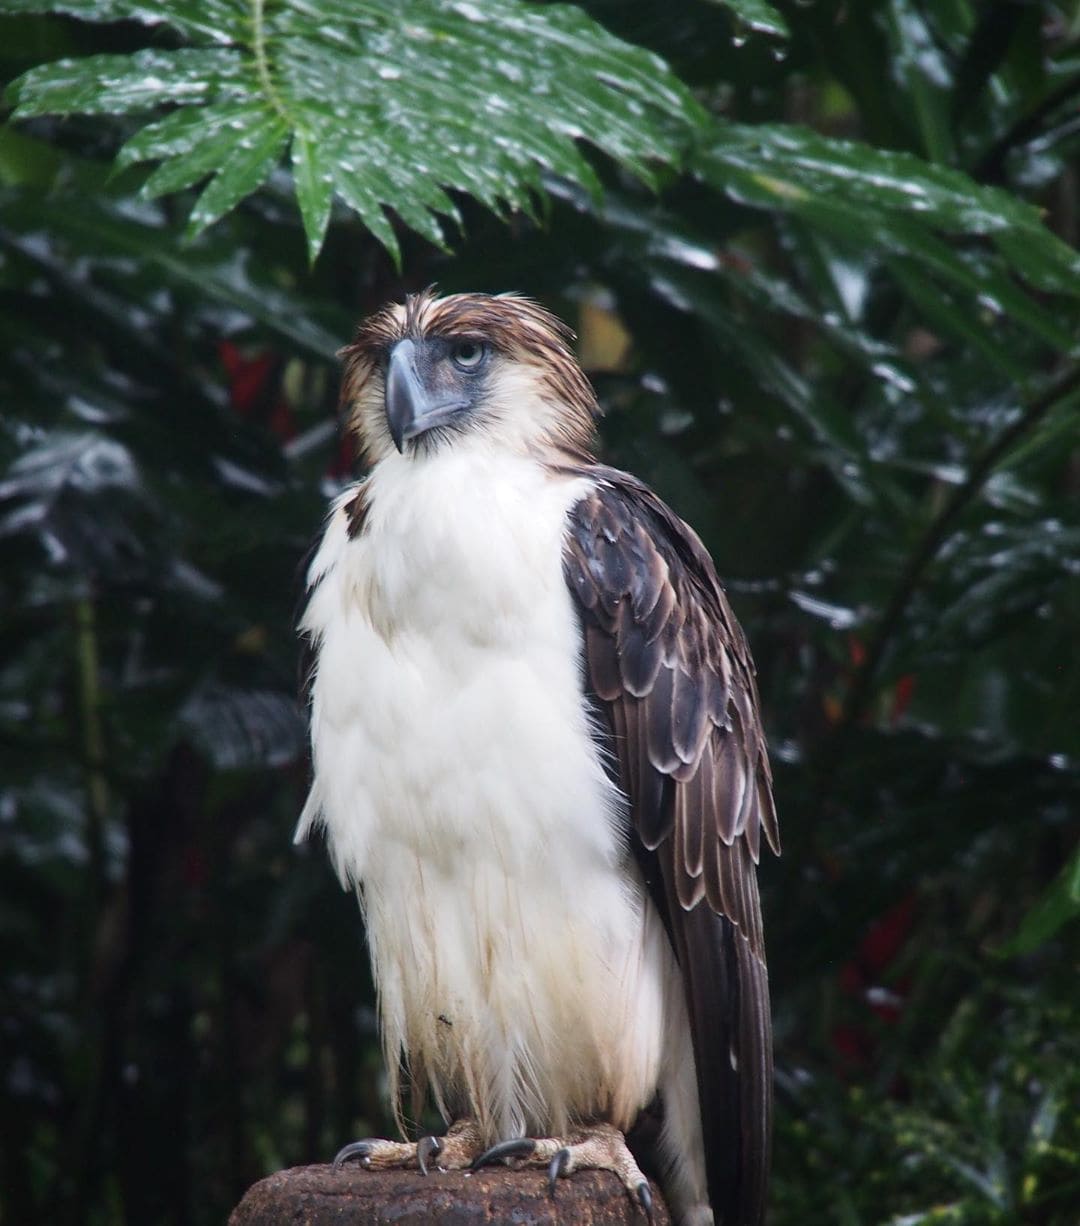 Schon lange gilt der Philippinenadler als Umweltschutz-Symbol – denn heute gibt es nur noch wenige hundert der wunderschönen, gigantischen Vögel. Sie leben in den dichten tropischen Wäldern im Süden der Philippinen, doch ihr Lebensraum wird durch Abholzung und Bejagung stark begrenzt. Wir waren mit @qatarairways in Mindanao, wo es noch die meisten wildlebenden Tiere gibt. Dieser angeschossene Adler wird in der @phileaglefdn aufgepäppelt, bevor er sich wieder im Regenwald sein Territorium sucht. #reporterontour #davaotogether #traveldeeper #comewithme #philippinen #philippineeagle #nature #regenwald #passionpassport #animalsatrisk #bird #adler #itsmorefuninphilippines #birds #asia #environment #davao #mindanao